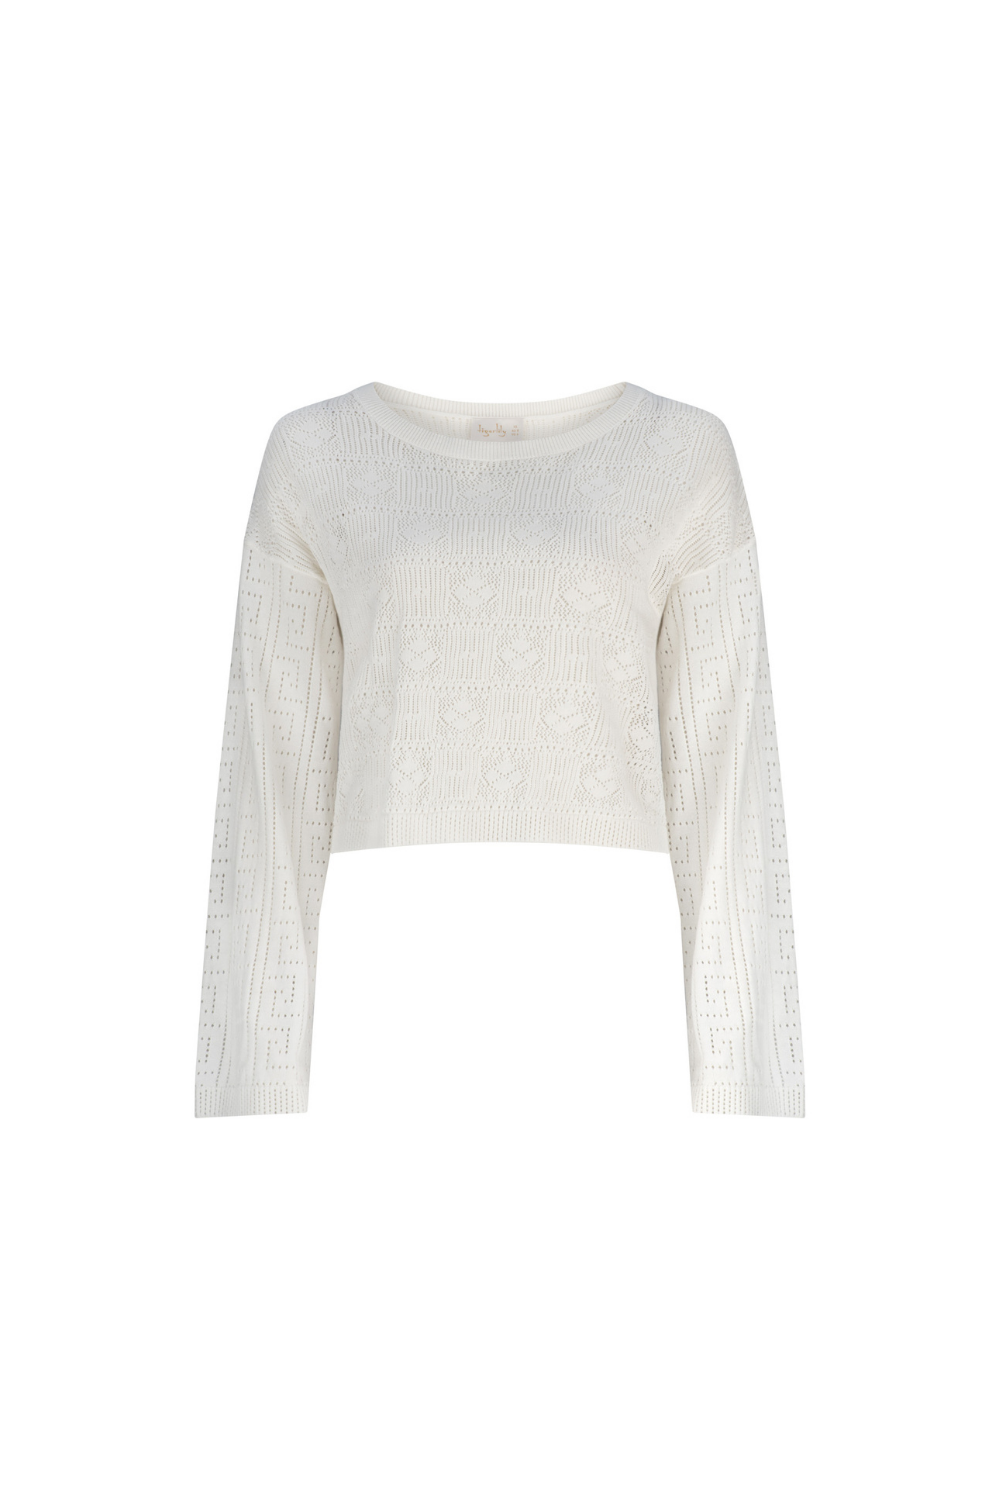 Apollo Eira Cropped Sweater - Off White